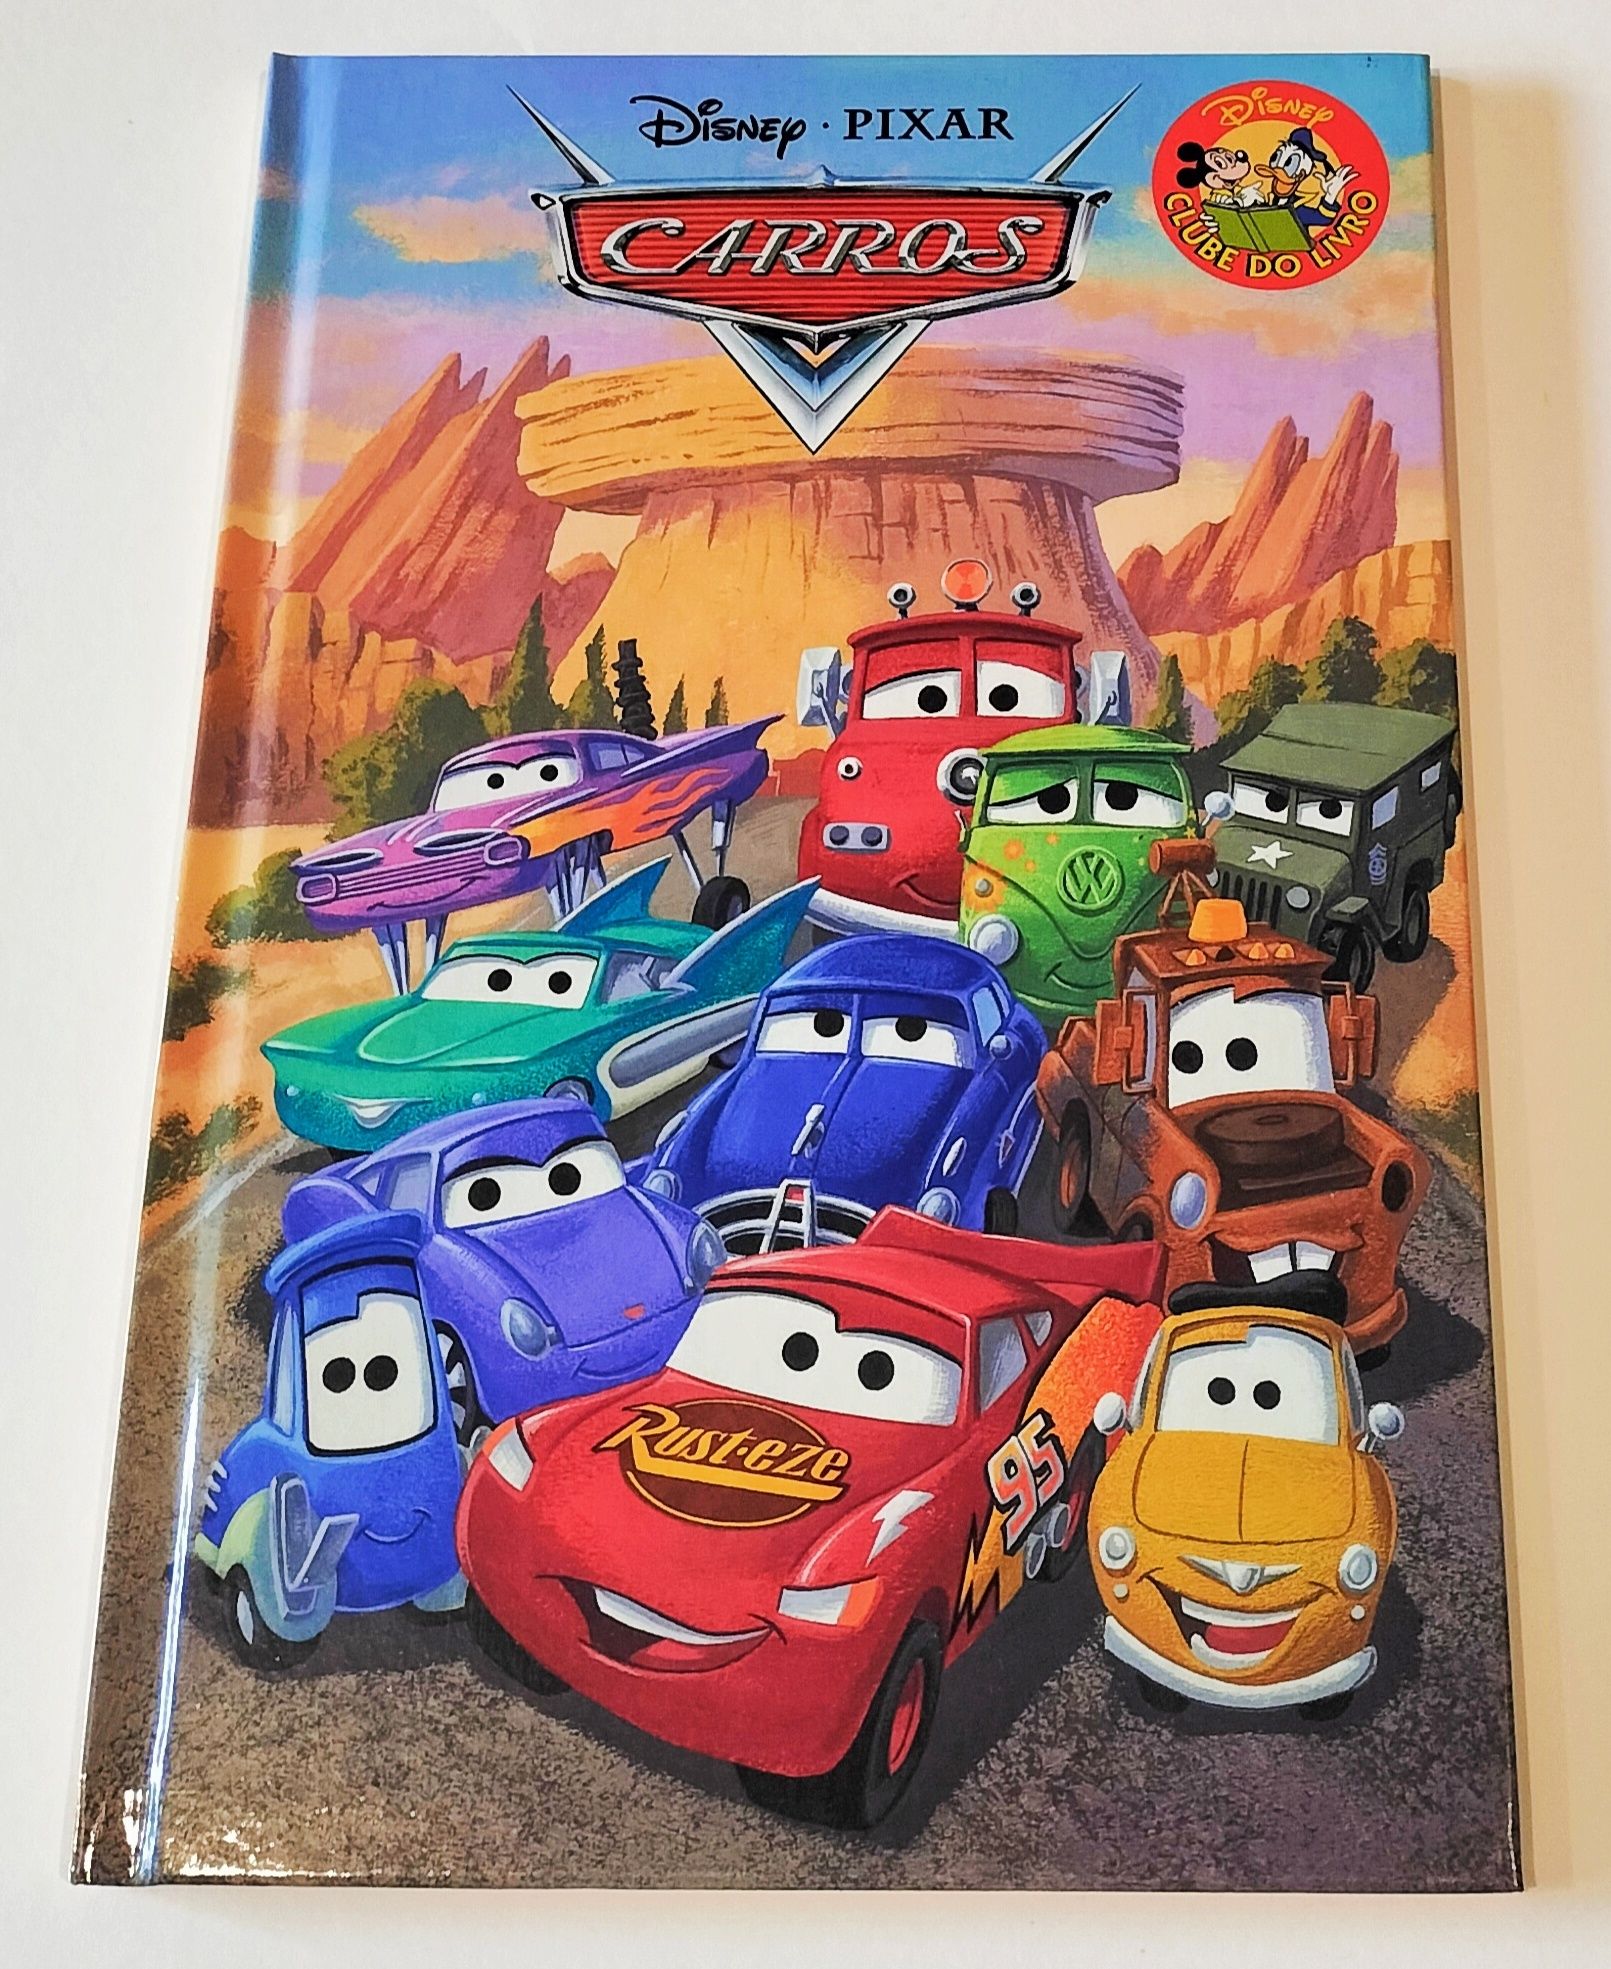 Livro "Carros" da Disney PIXAR